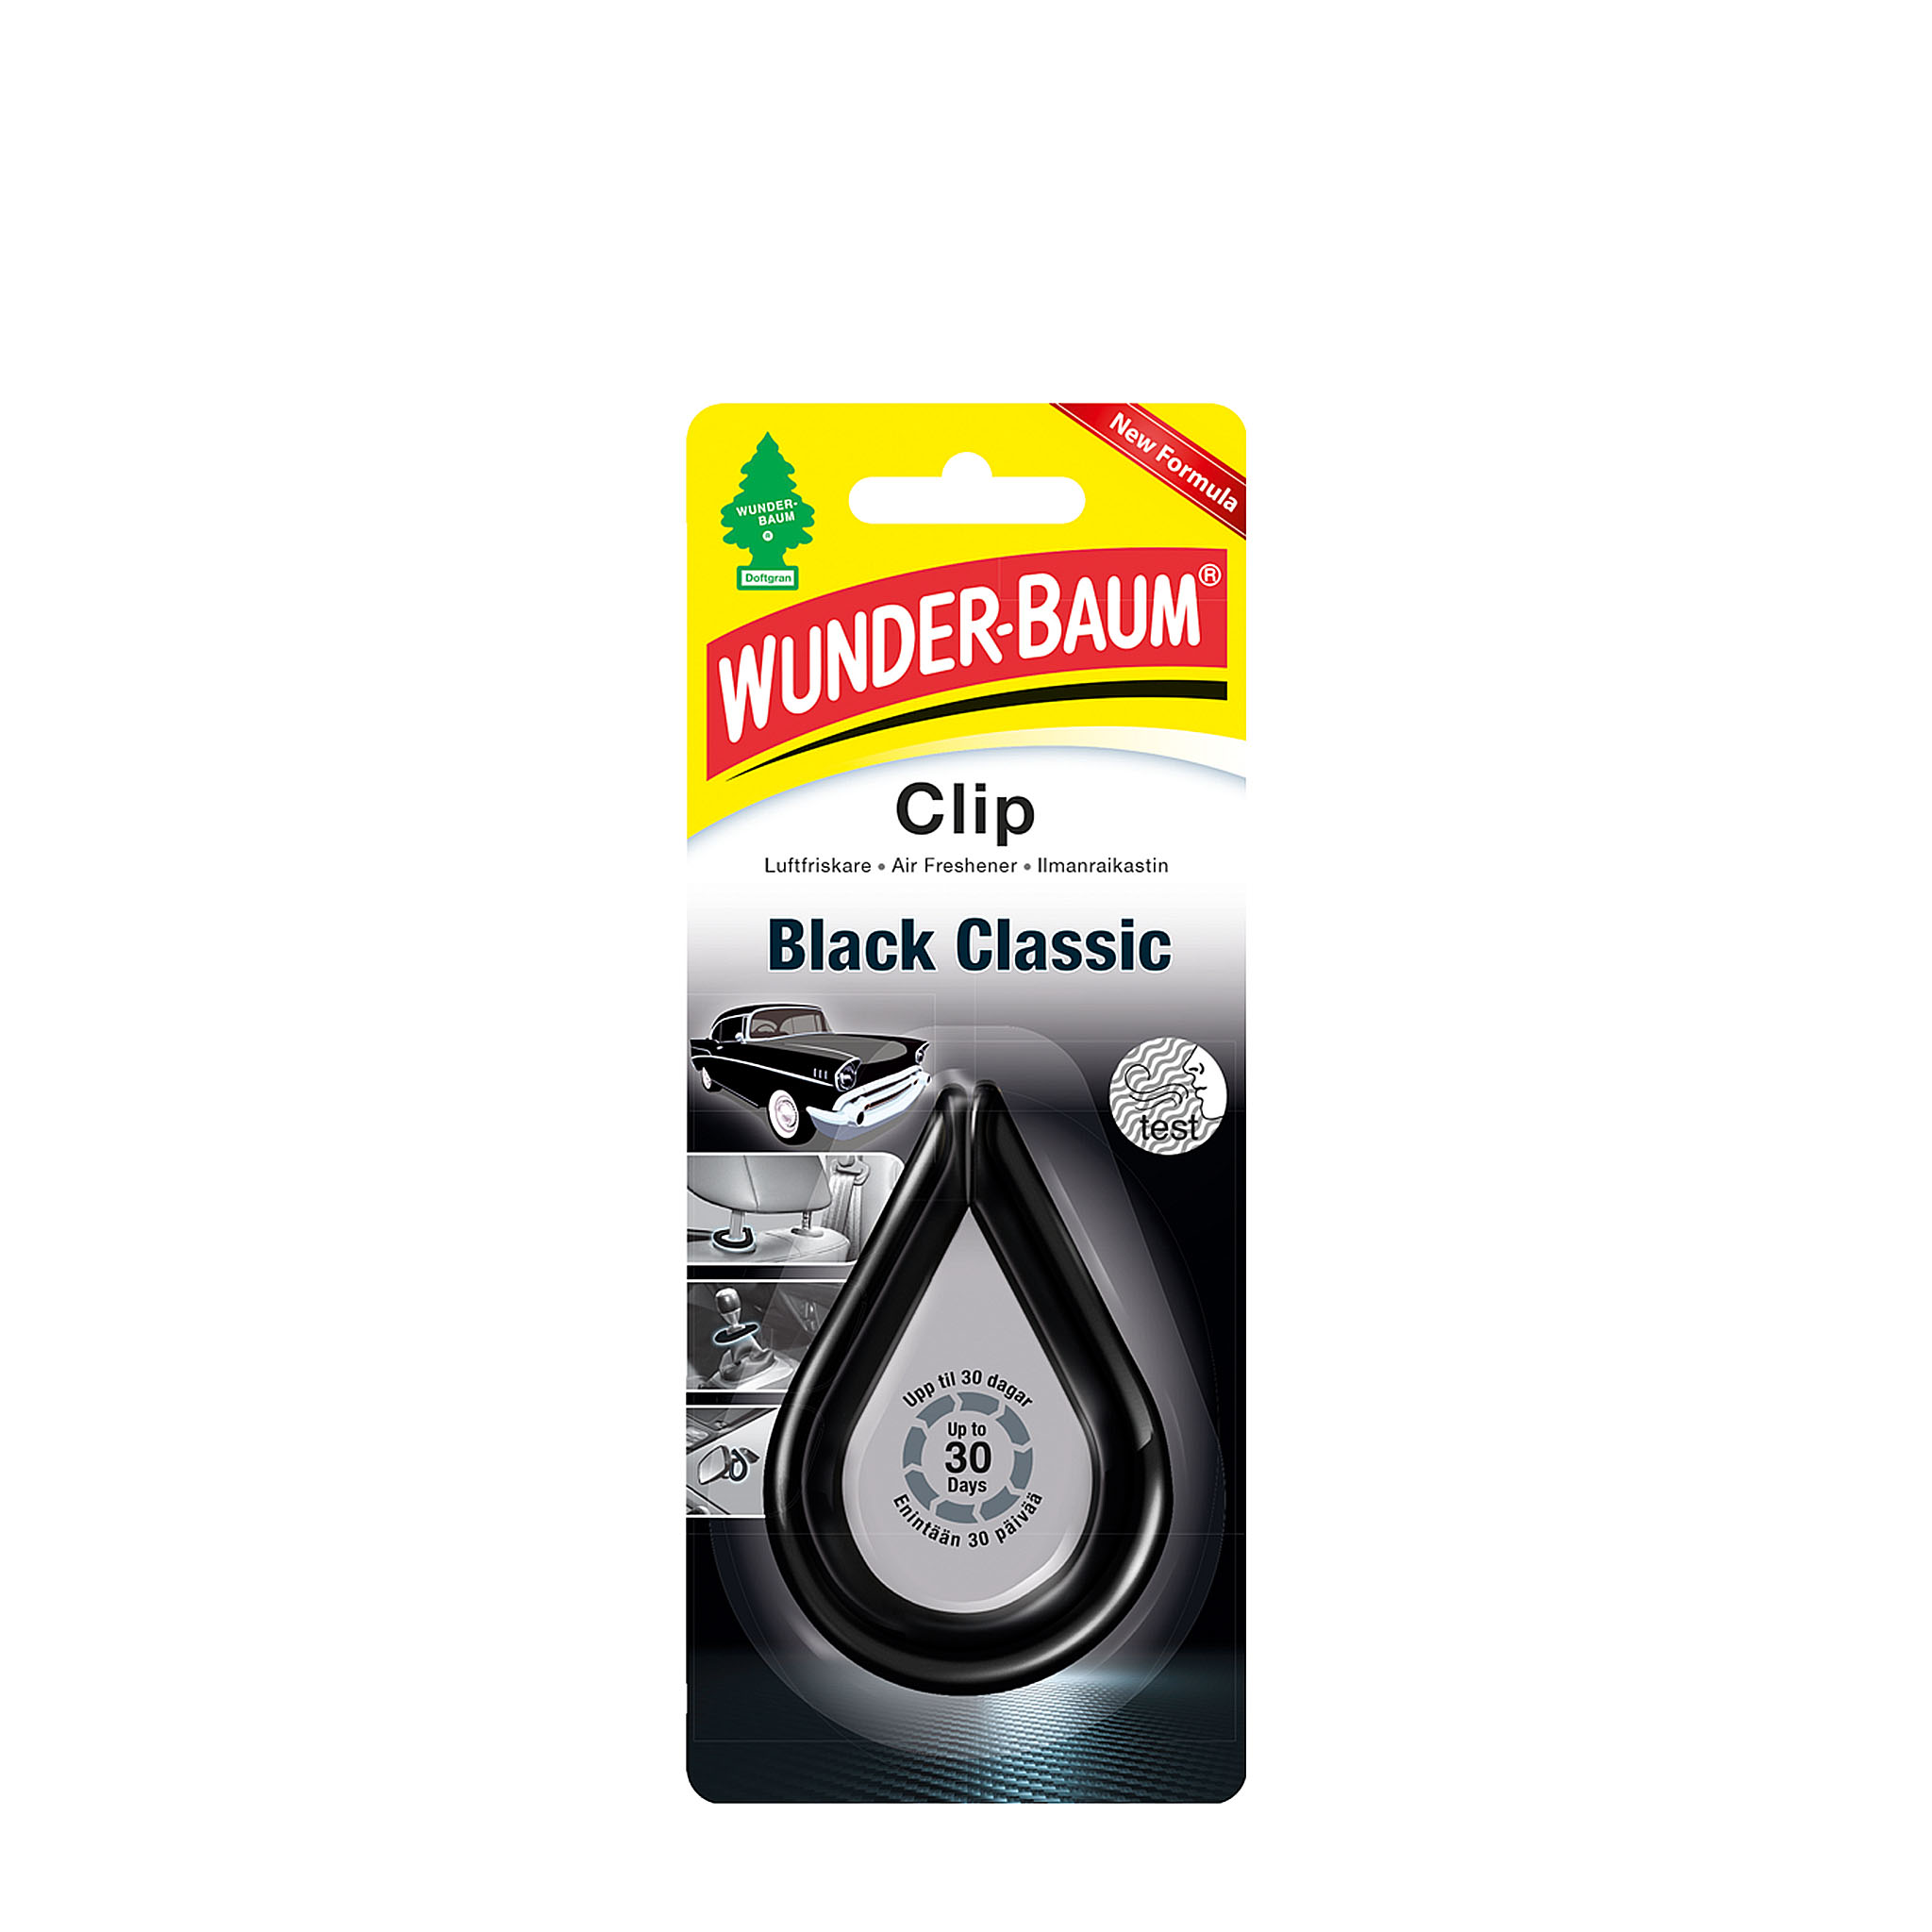 Duftfrisker til bil, båd, campingvogn - black ice - stor, Wunderbaum